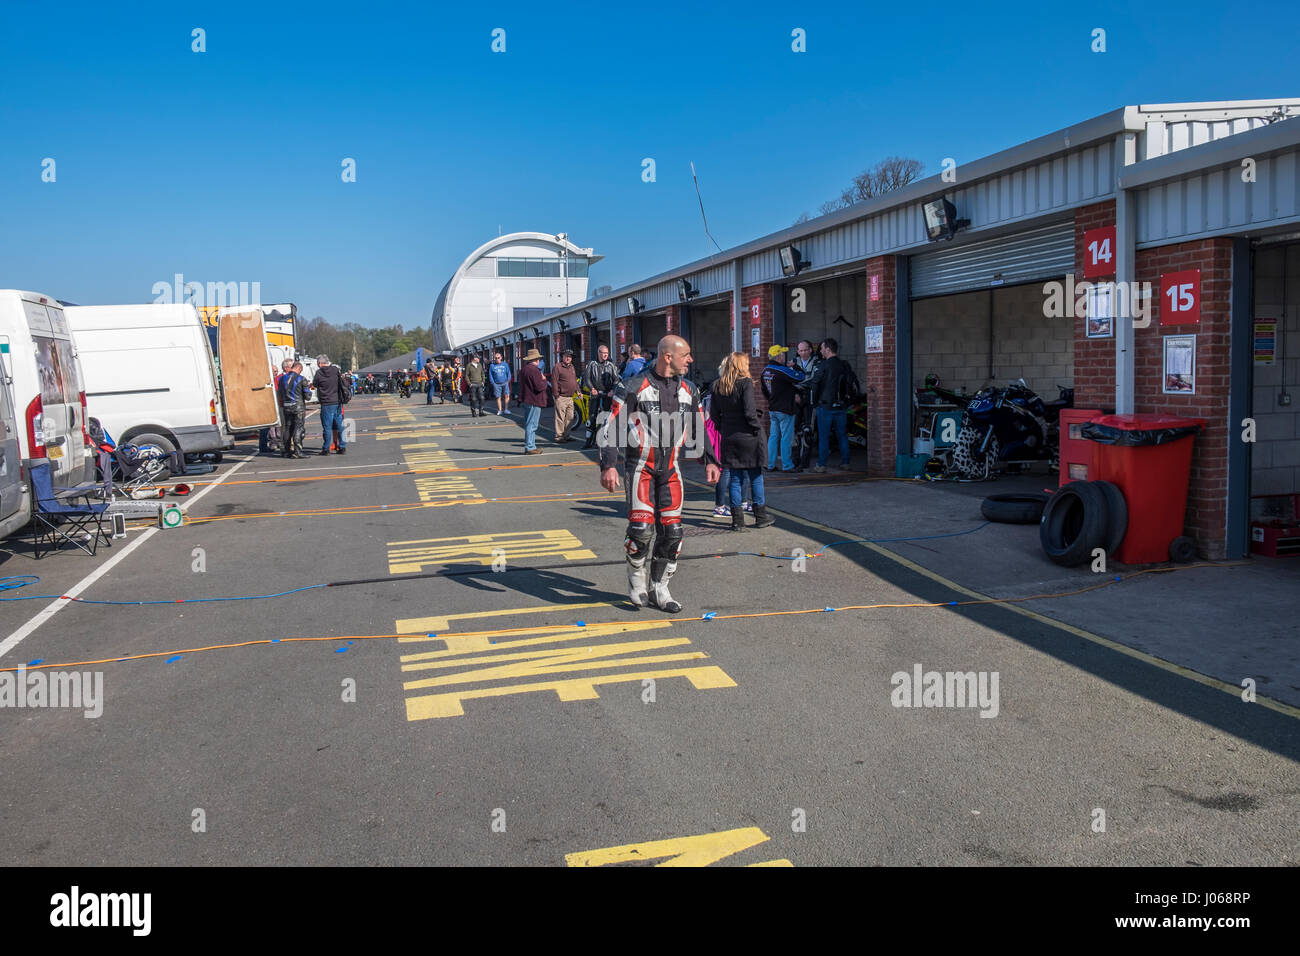 Motorbike rider walking down the pit lane at racing circuit, Stock Photo